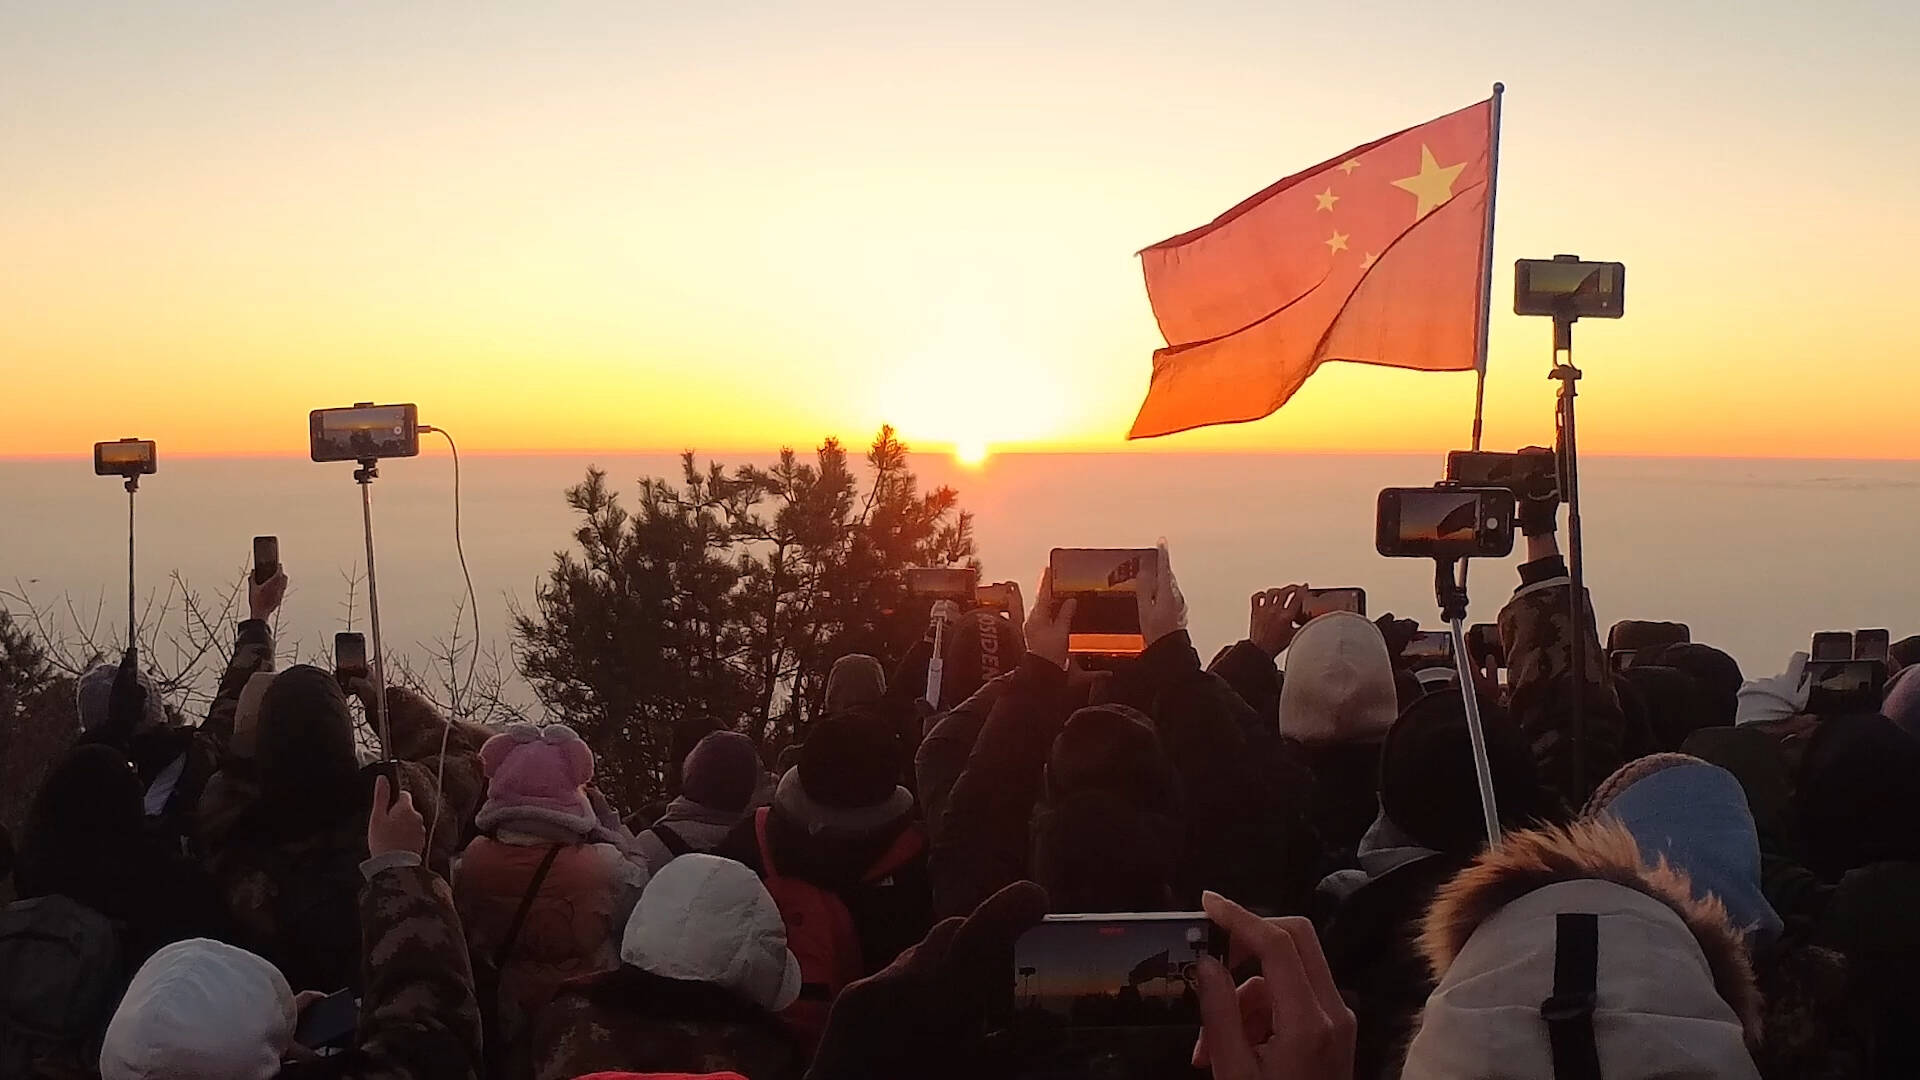 共赴“云海日出” 近万名游客泰山山巅迎接新年第一缕阳光